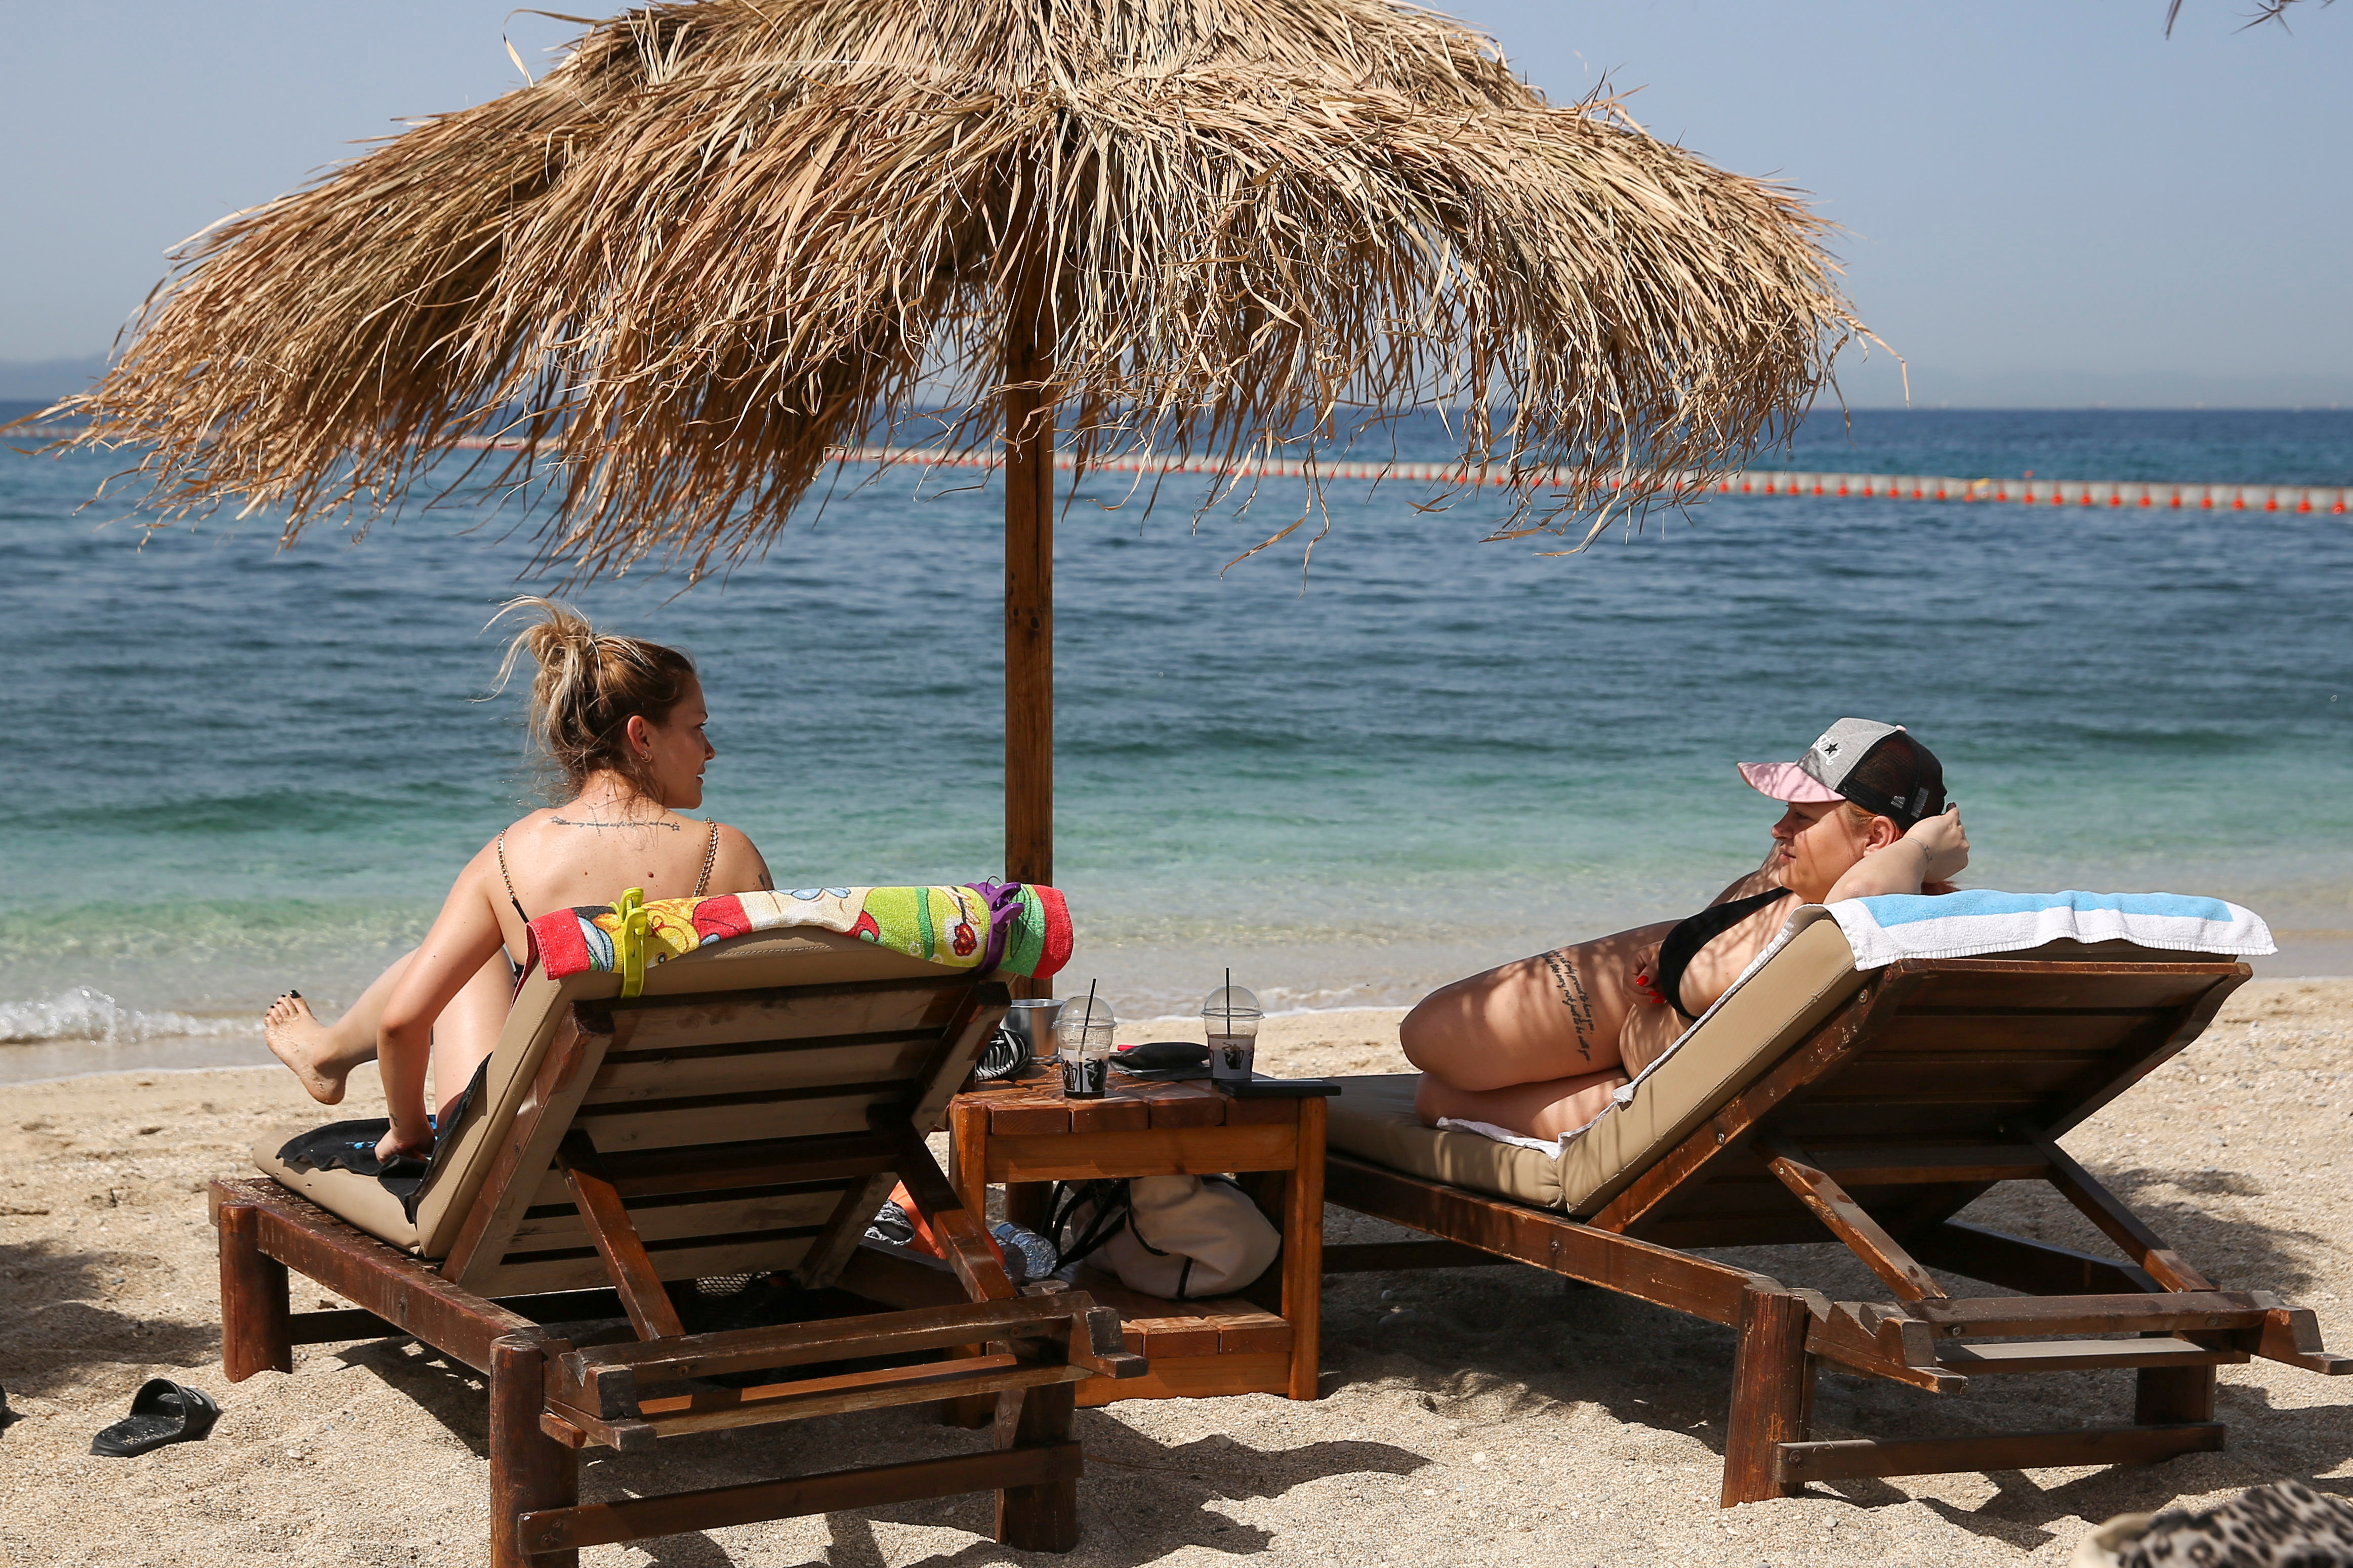 Луѓето уживаат во сонцето за време на официјалното повторно отворање на плажите за јавноста, по олеснувањето на мерките против ширењето на болеста коронавирус (СОВИД-19), во Атина, Грција, 8 мај 2021 година. REUTERS/Костас Балтас